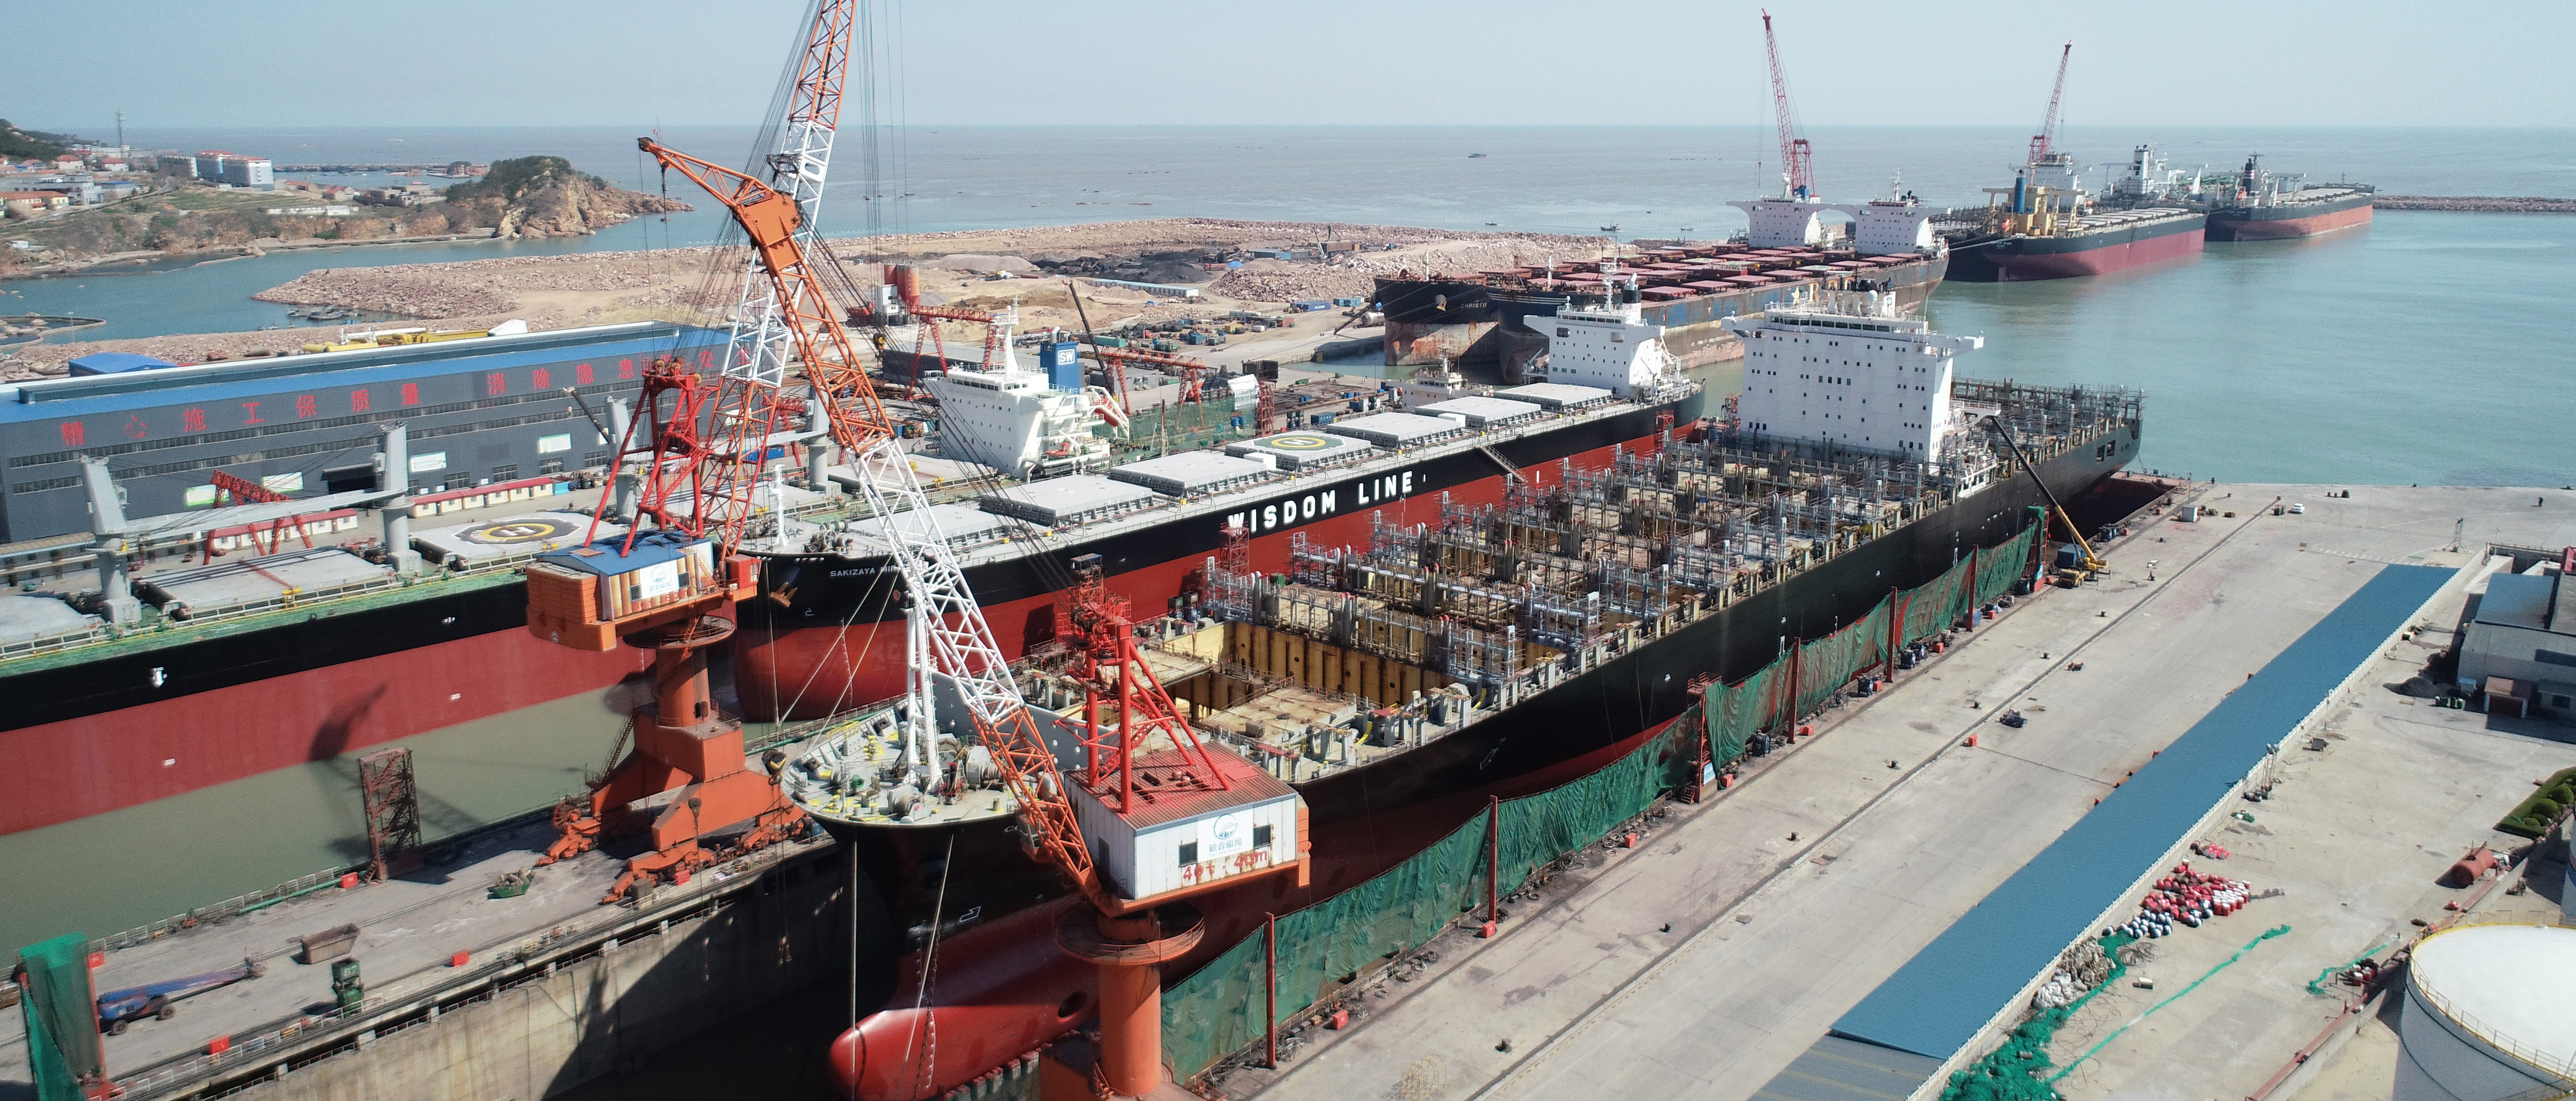 17万吨无动力船舶“罗伯托里佐”轮首次安全靠泊鑫弘重工码头